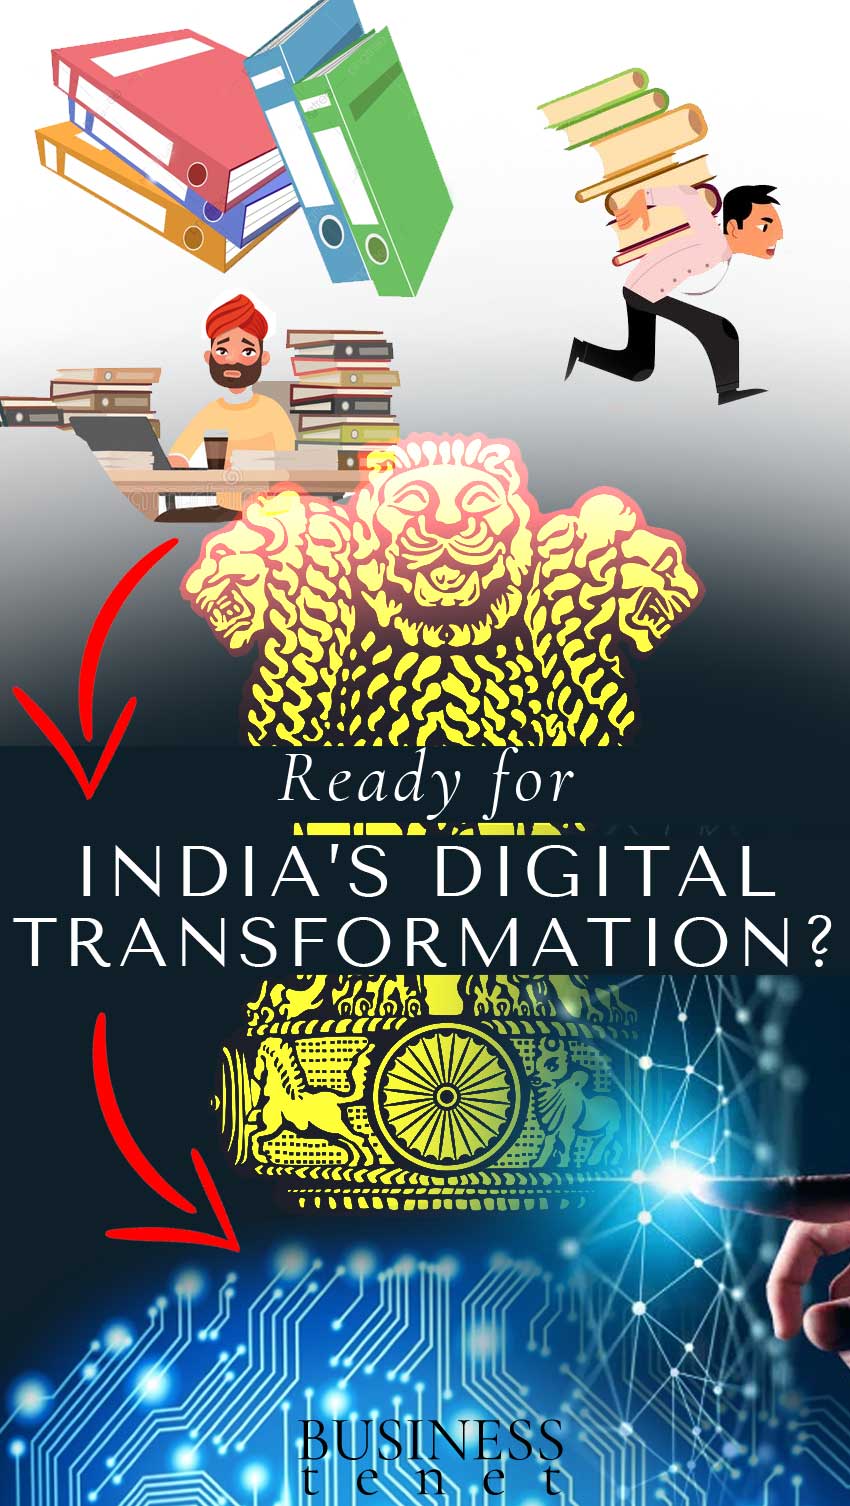 e-governance-india-digital-transformation